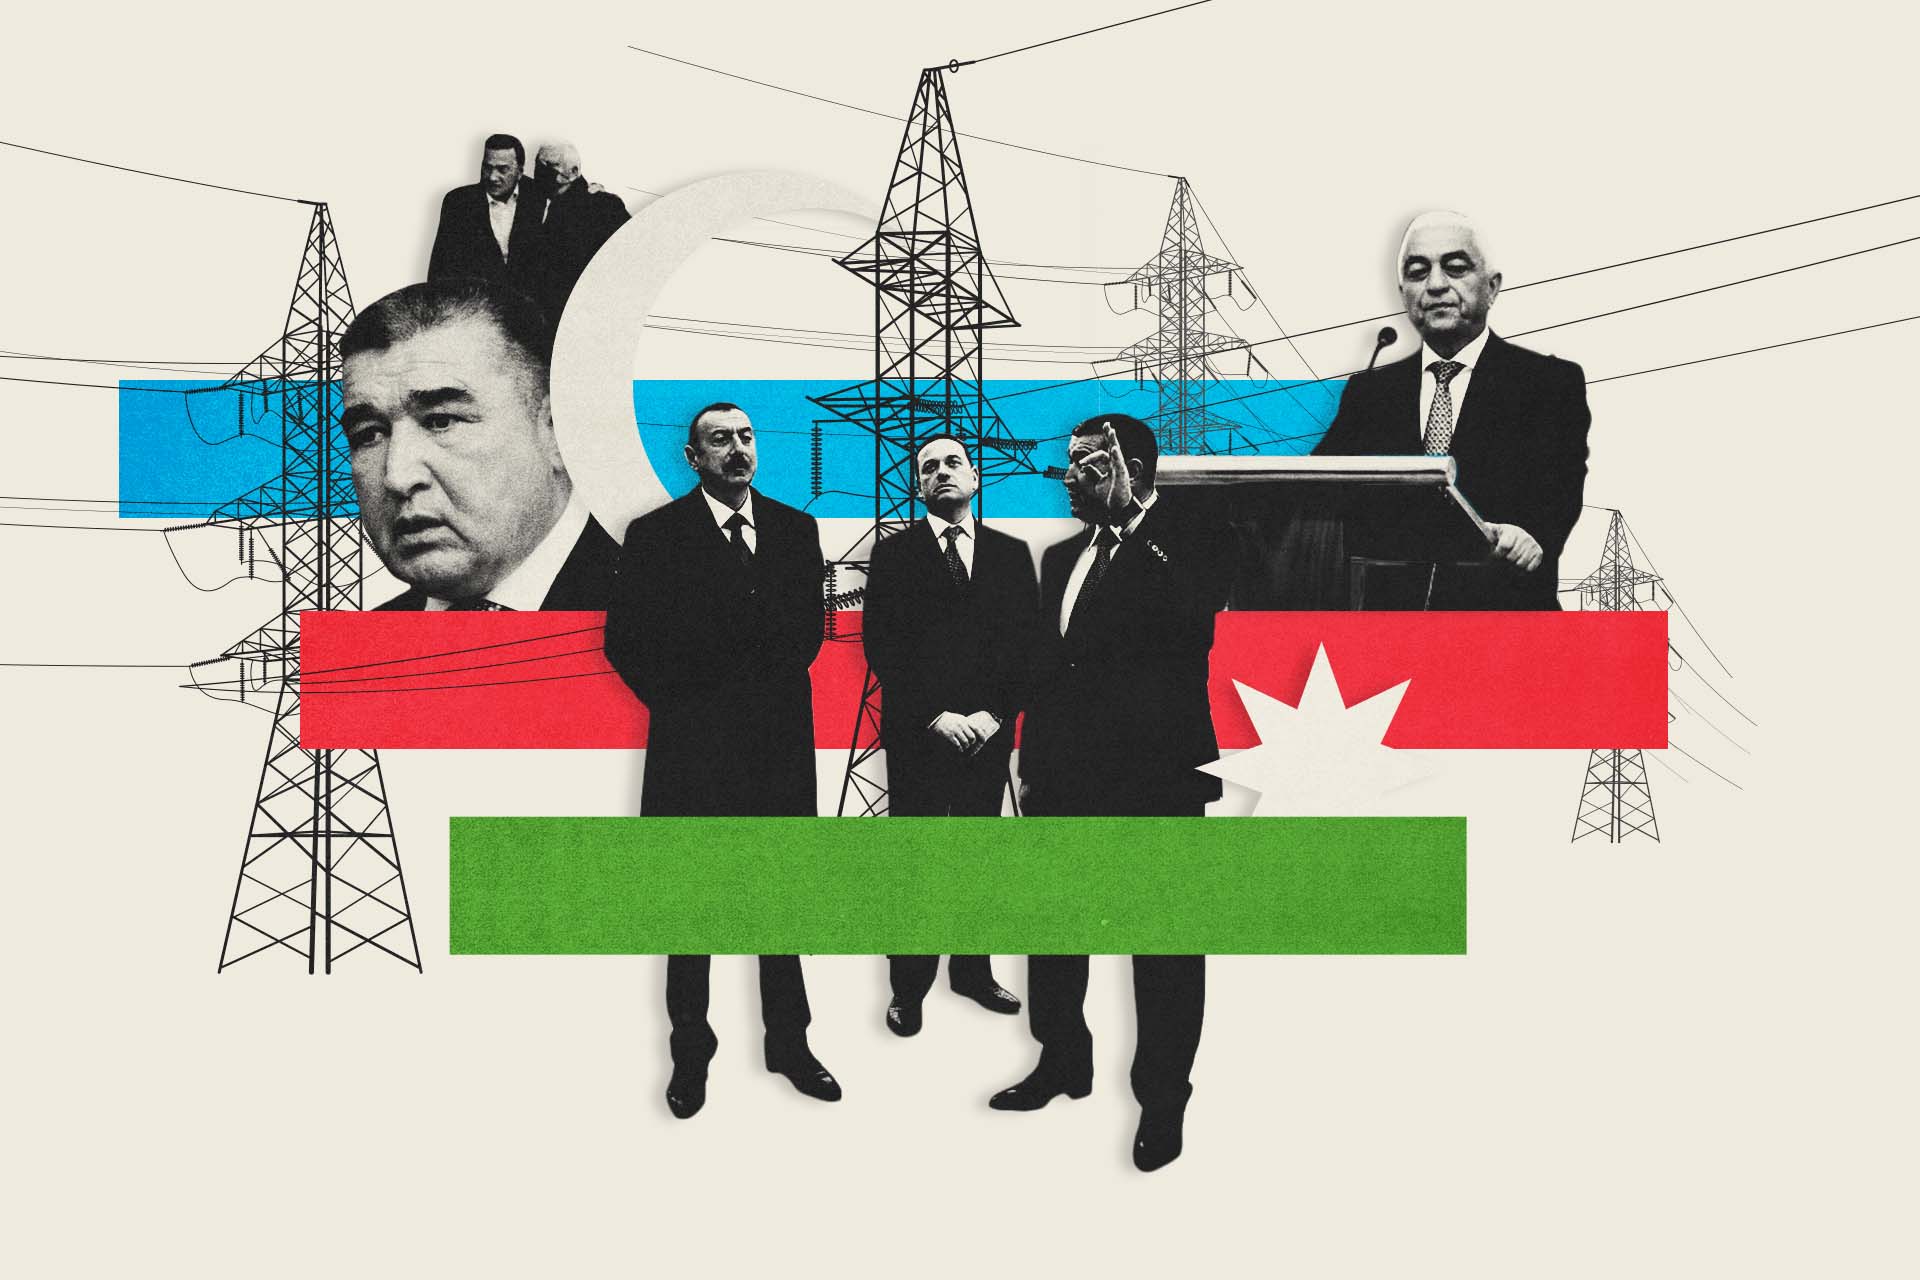 Азербайджан продает Грузии электроэнергию через офшорные компании. Мы узнали, кто за ними стоит.